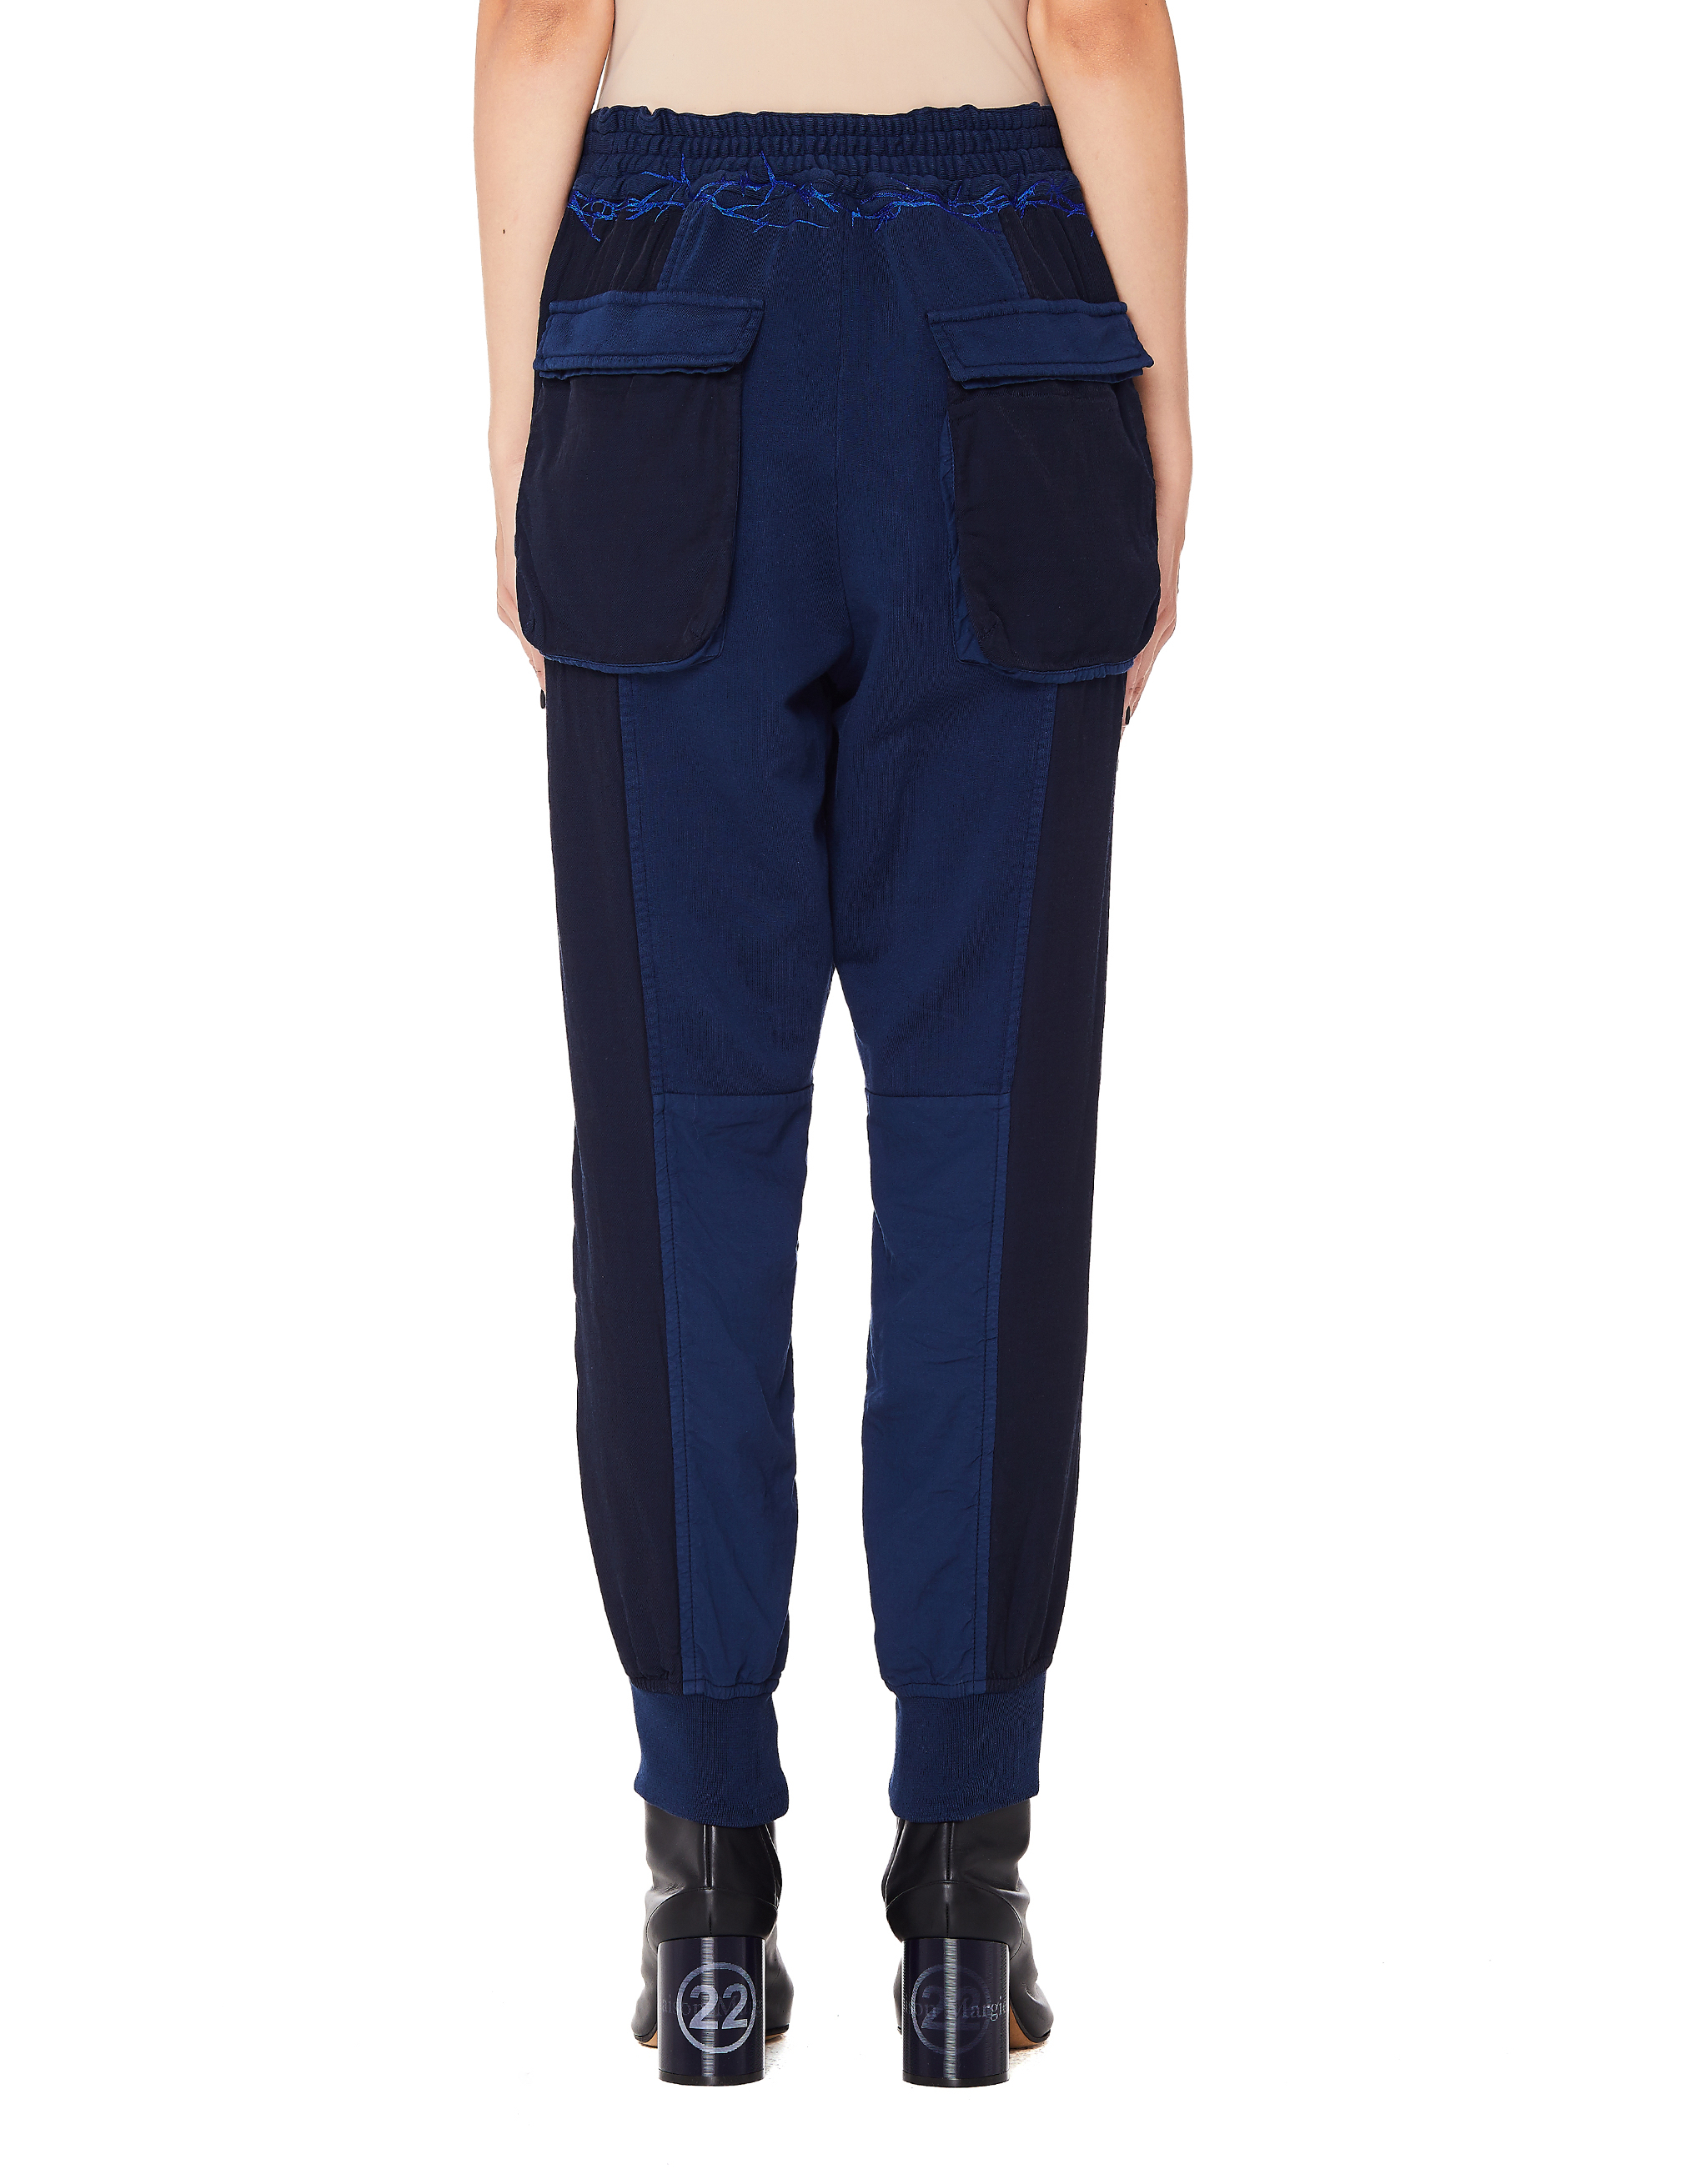 Синие брюки с лампасами и вышивкой Haider Ackermann 193-6413-E-222-045, размер S;M - фото 3